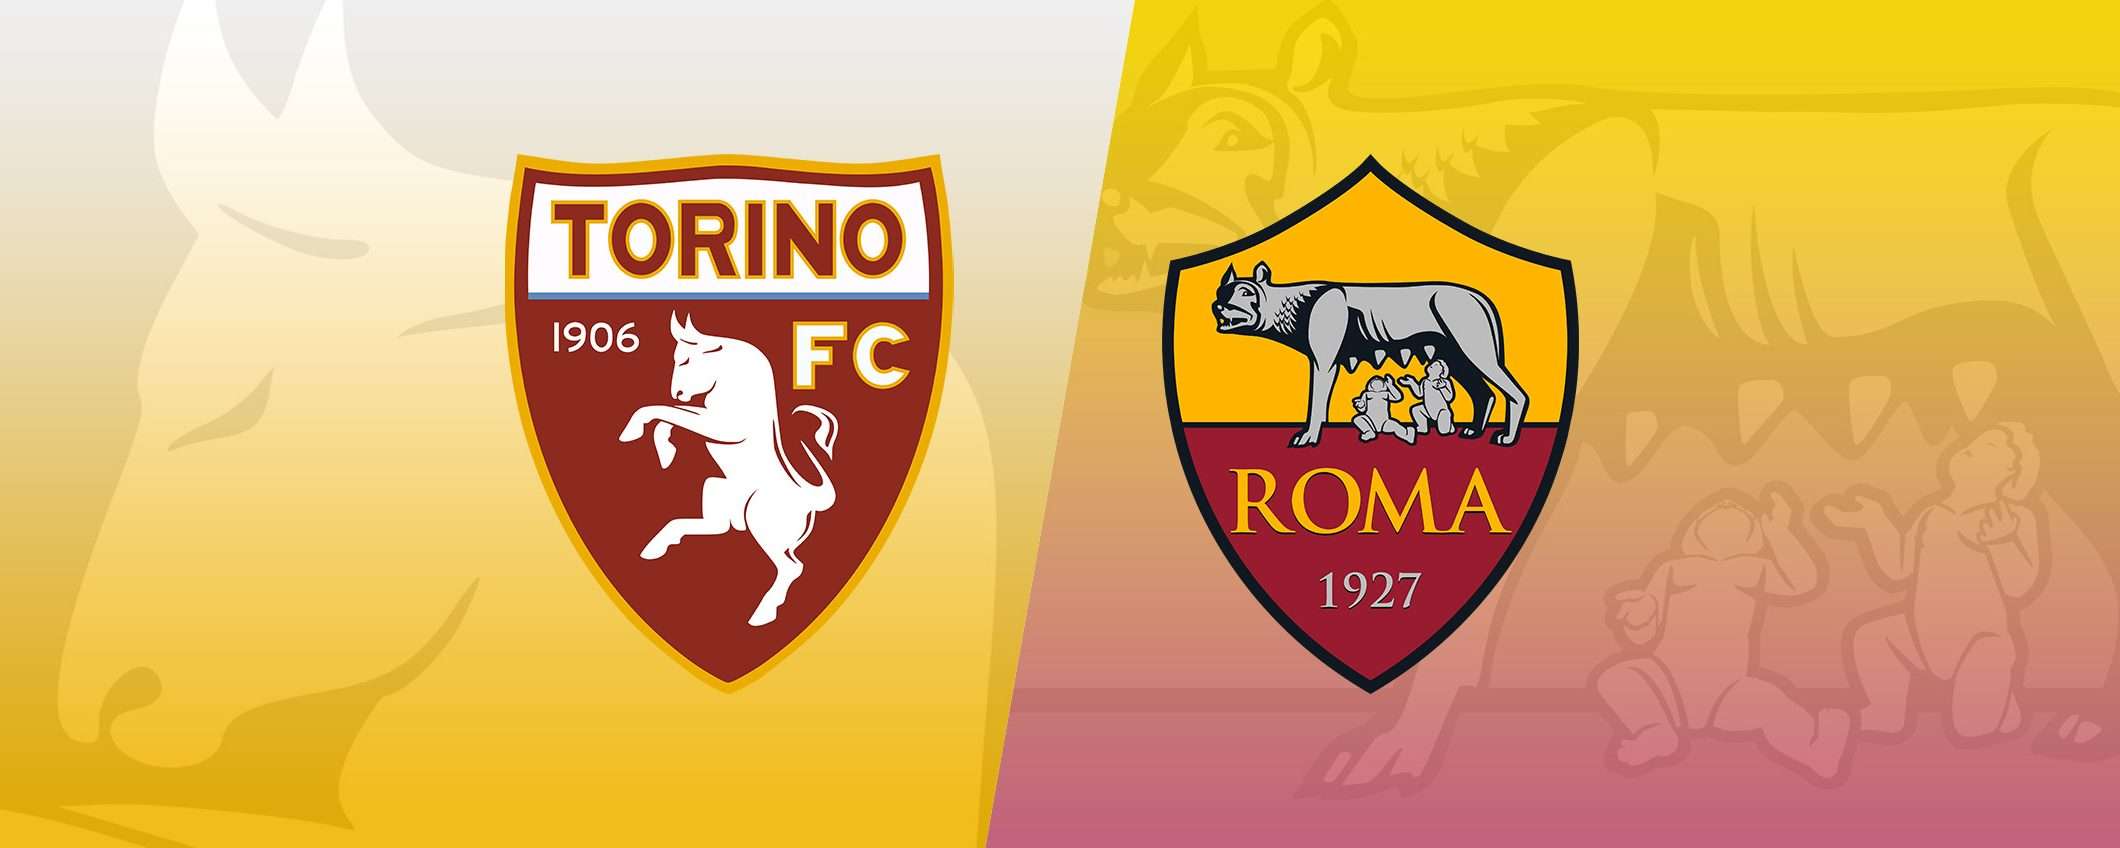 Come vedere Torino-Roma in streaming (Serie A)